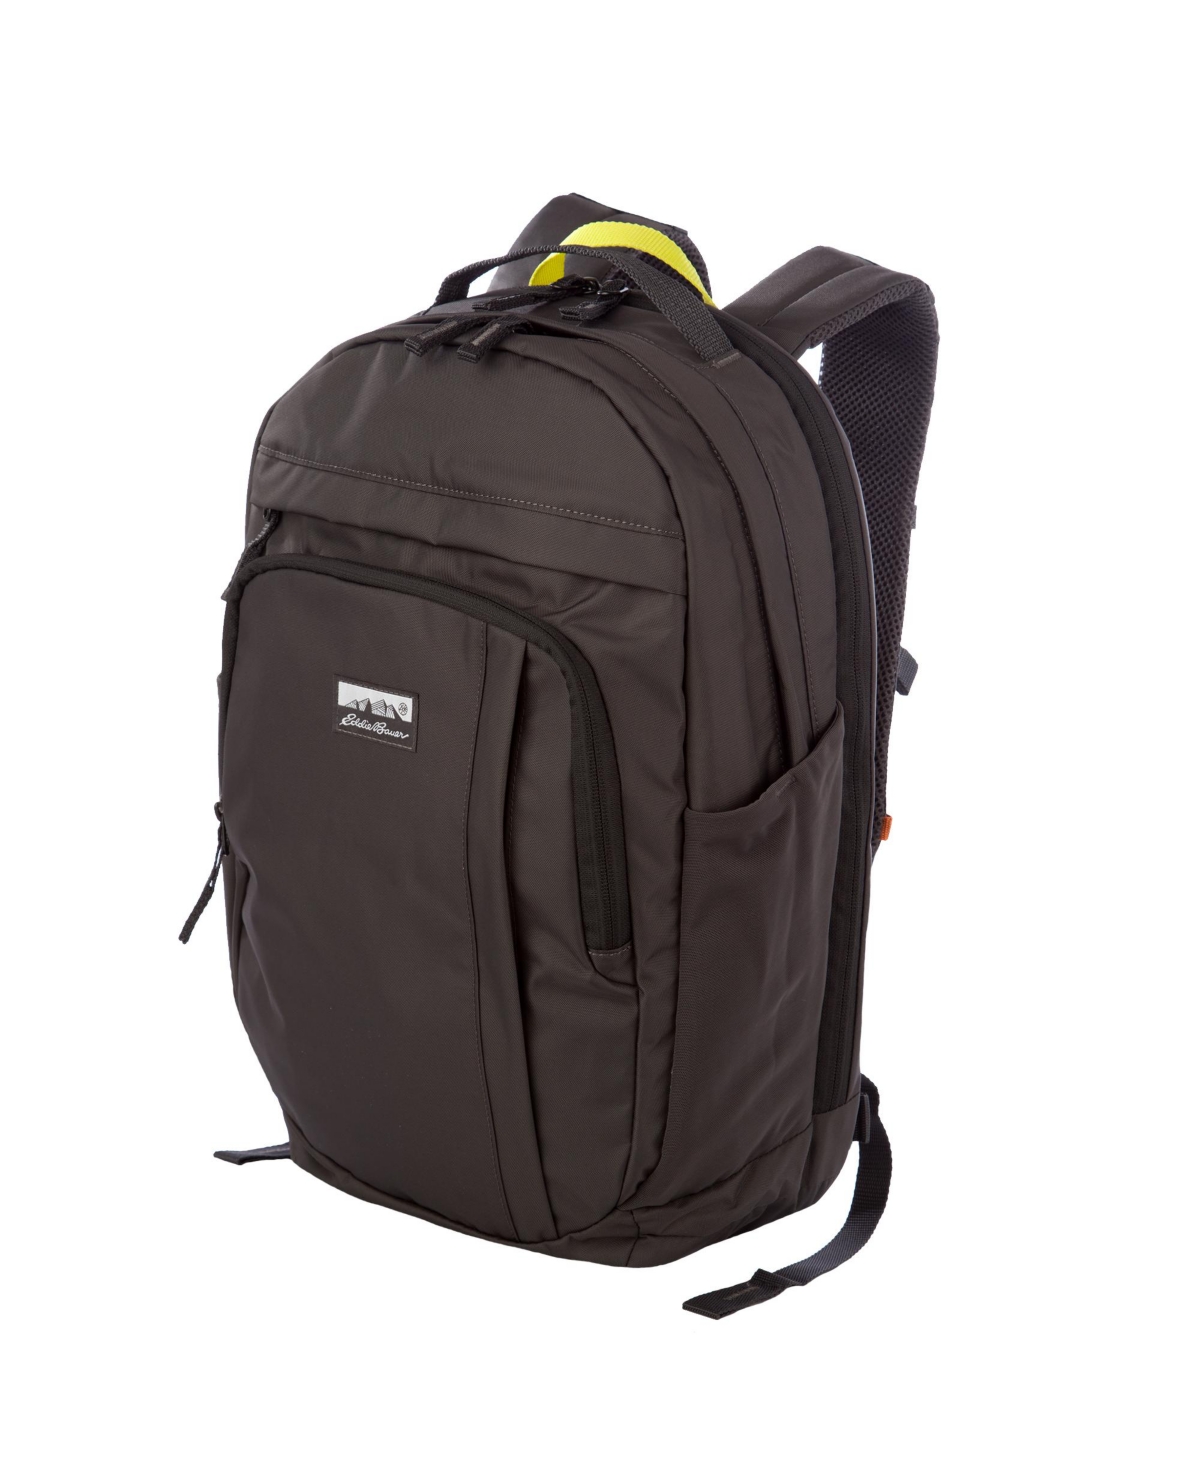 30L Venture Backpack Daypack - Carbon